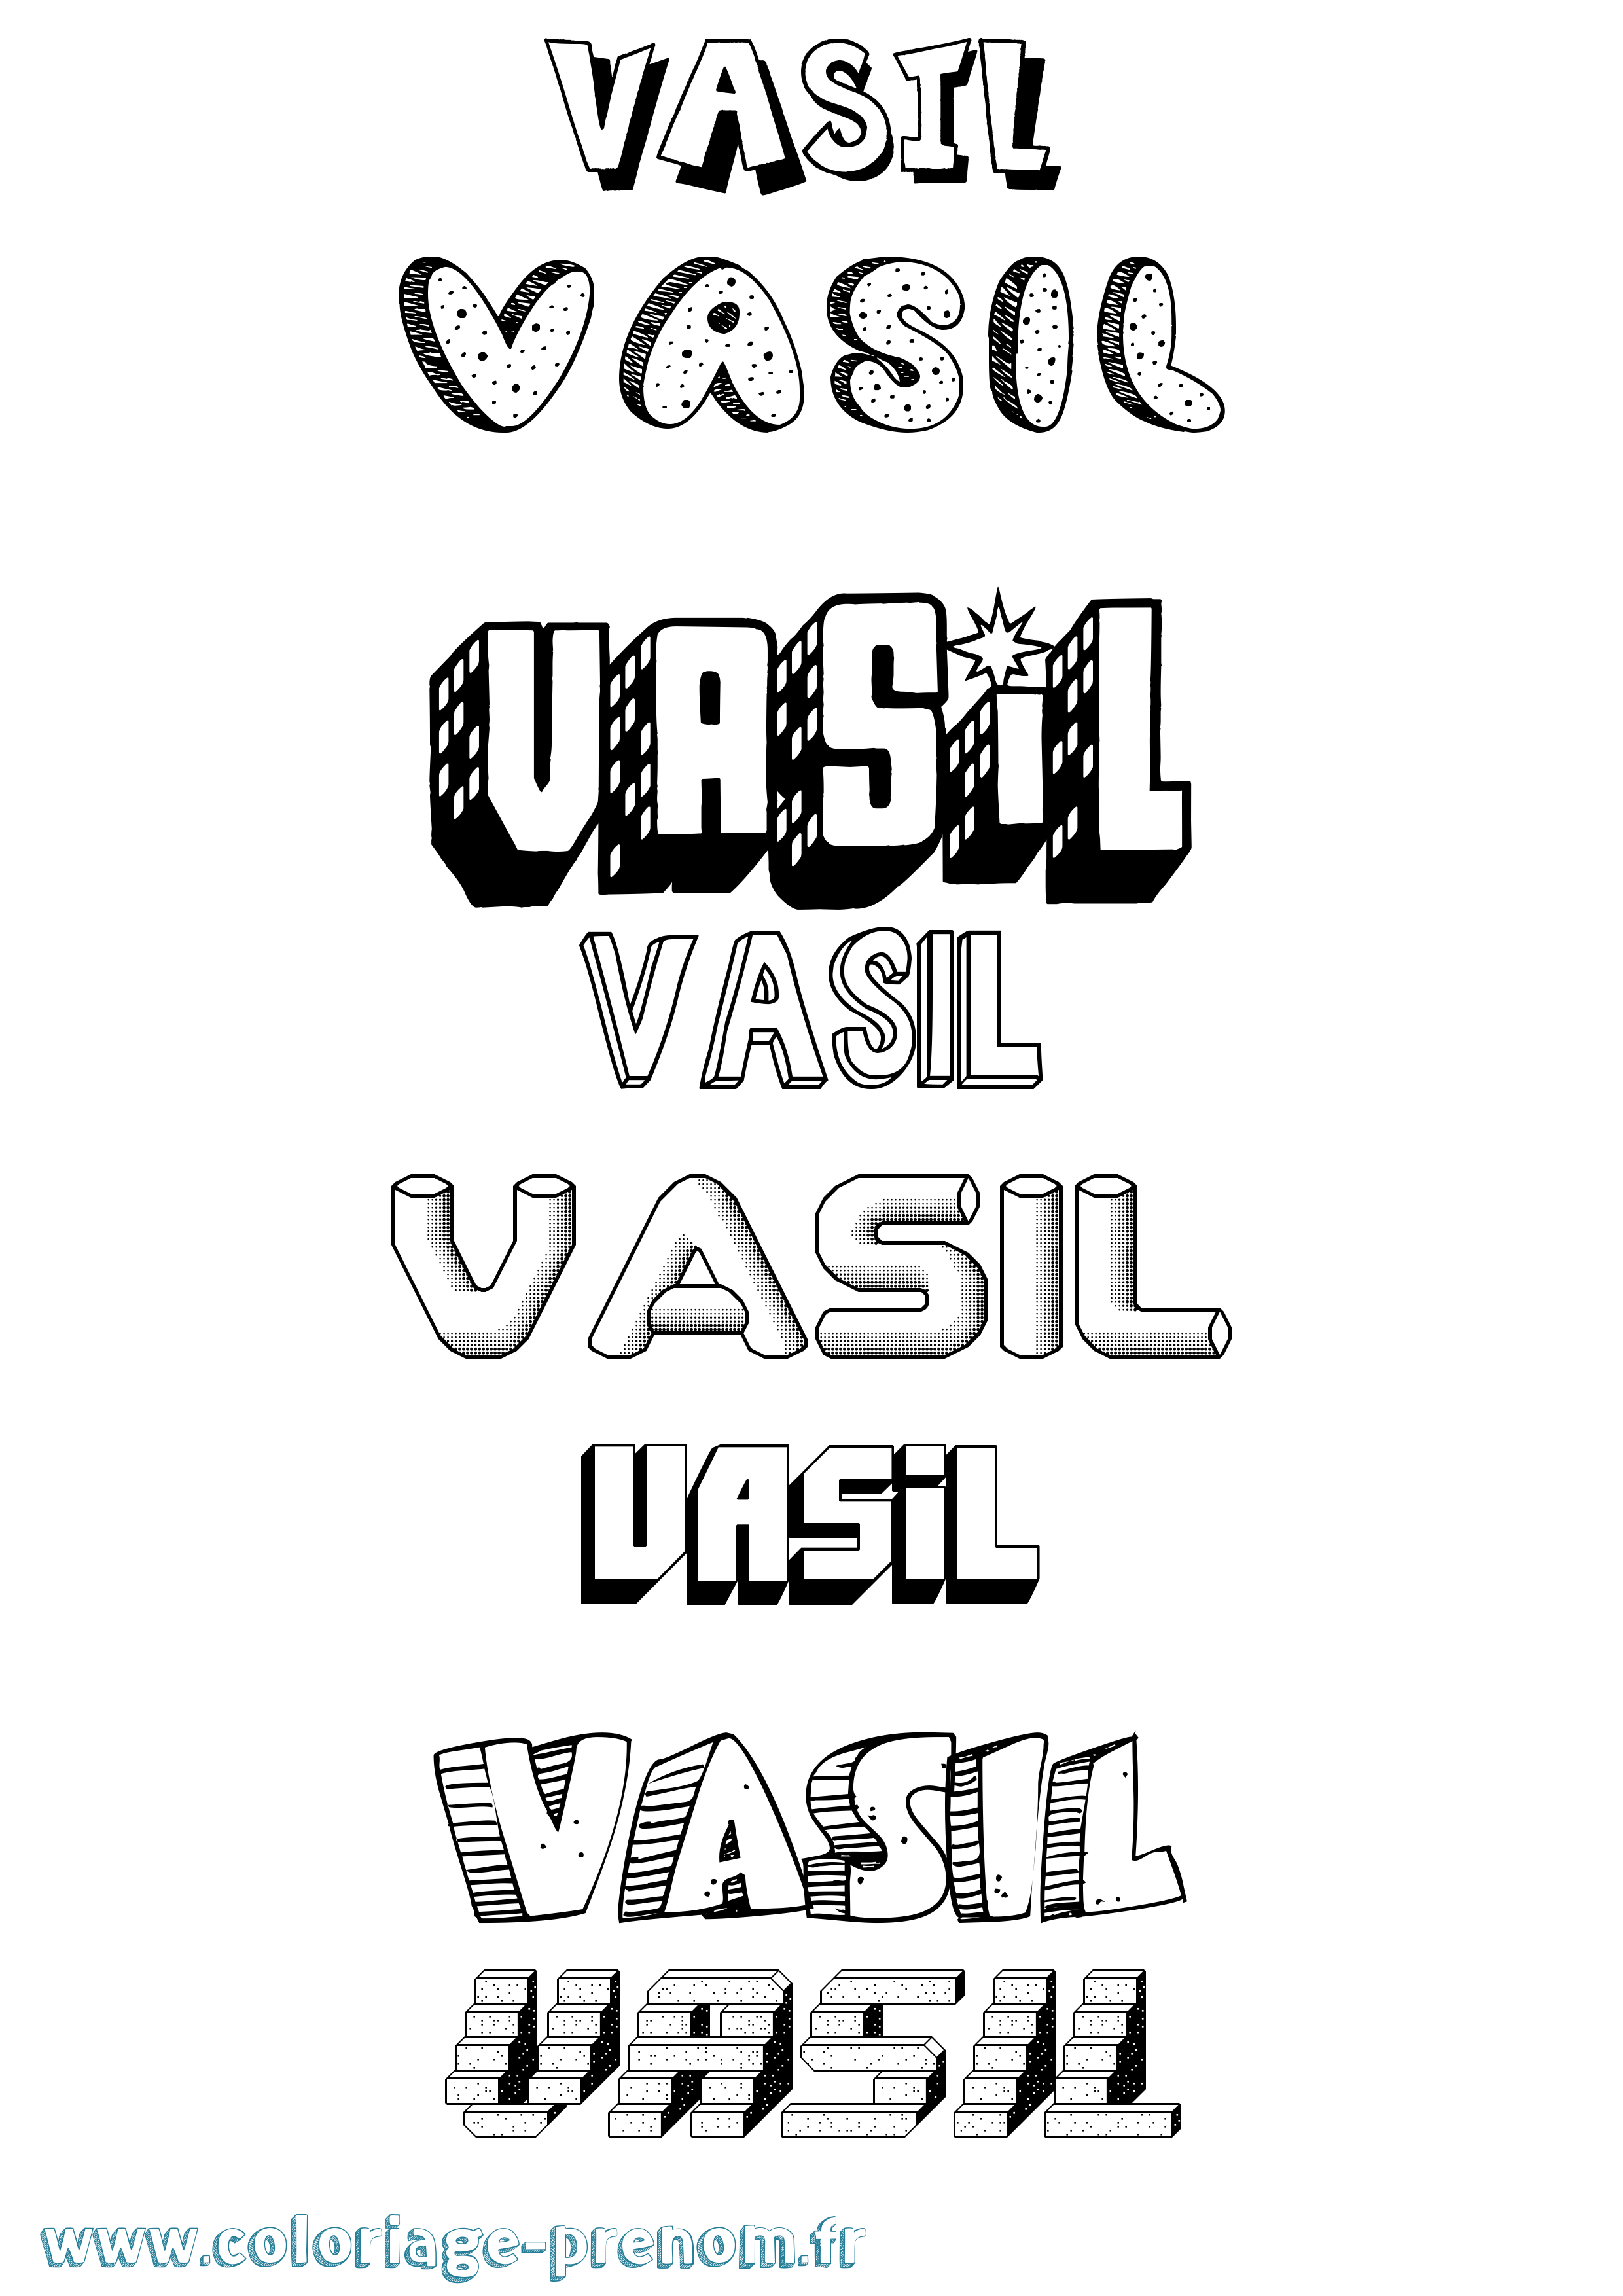 Coloriage prénom Vasil Effet 3D